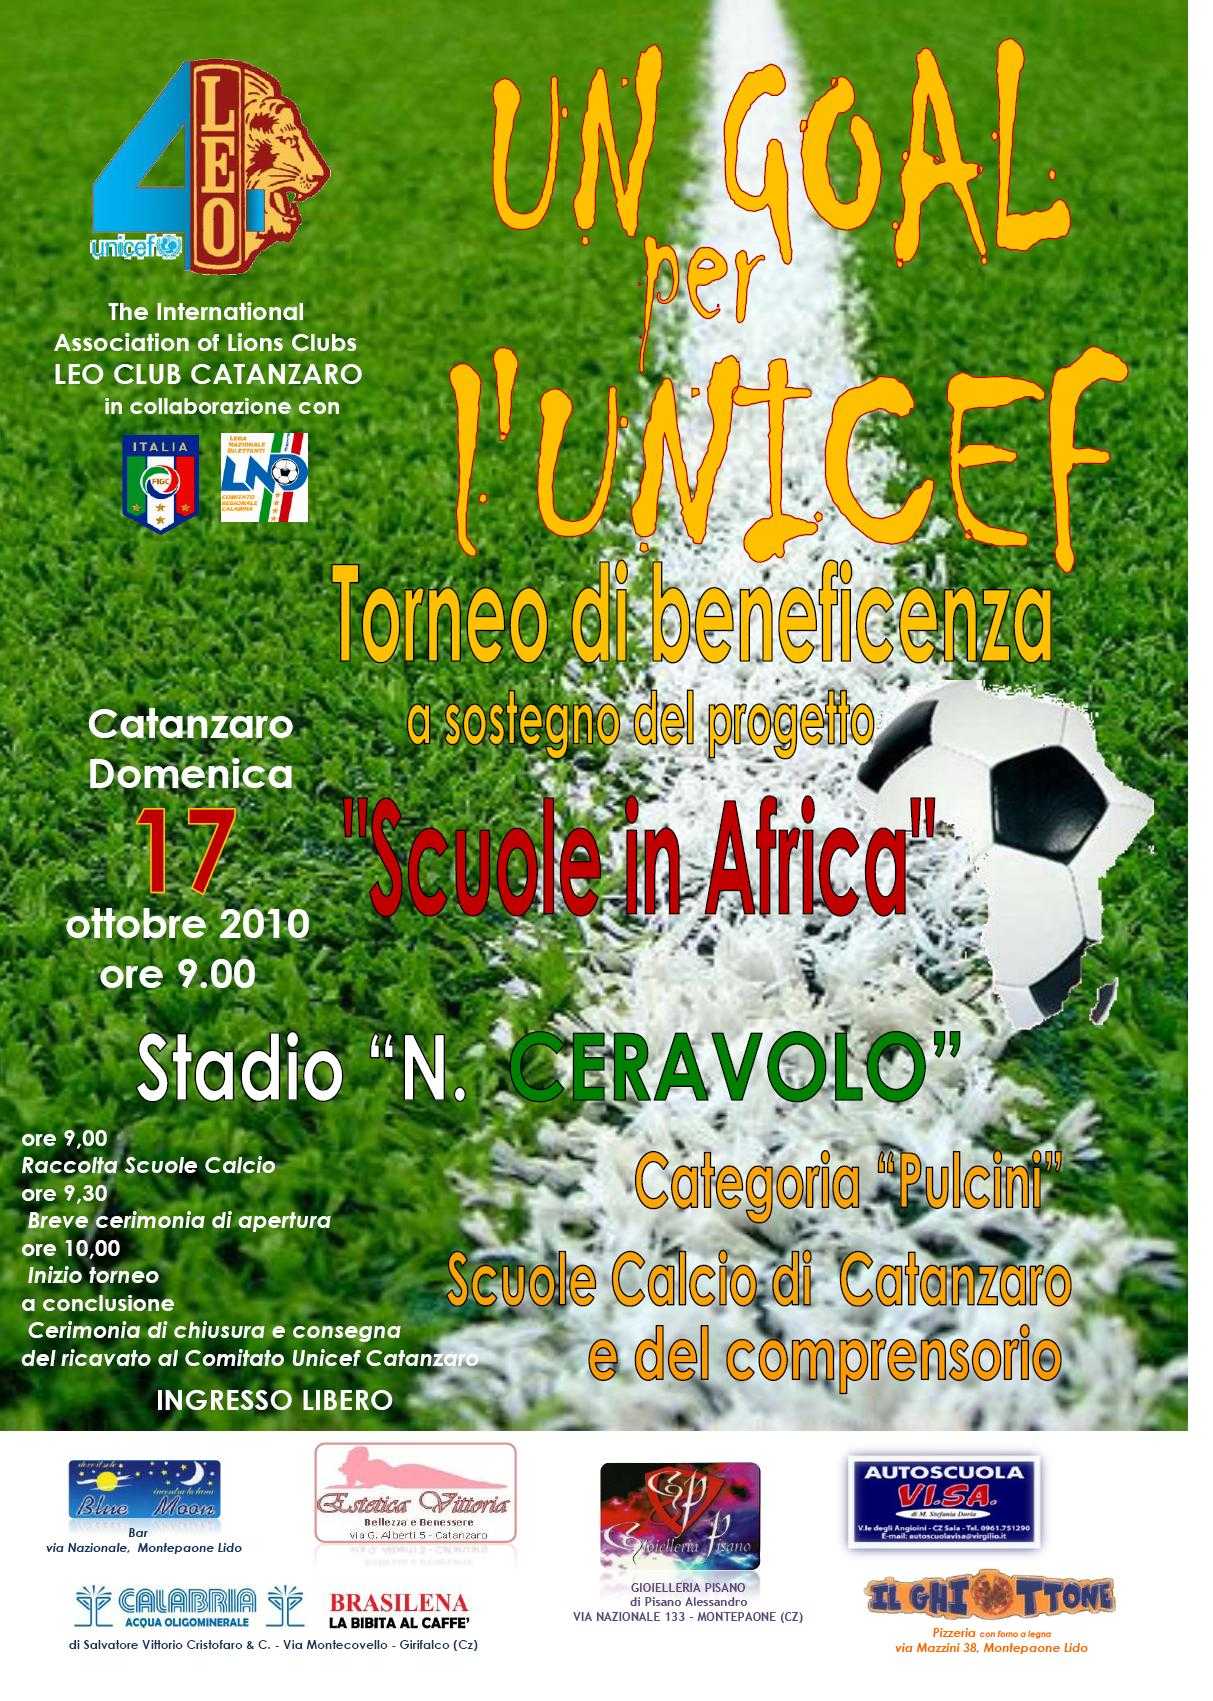 CS Leo Club Catanzaro: Torneo "Un goal per l'Unicef" domani allo Stadio Ceravolo